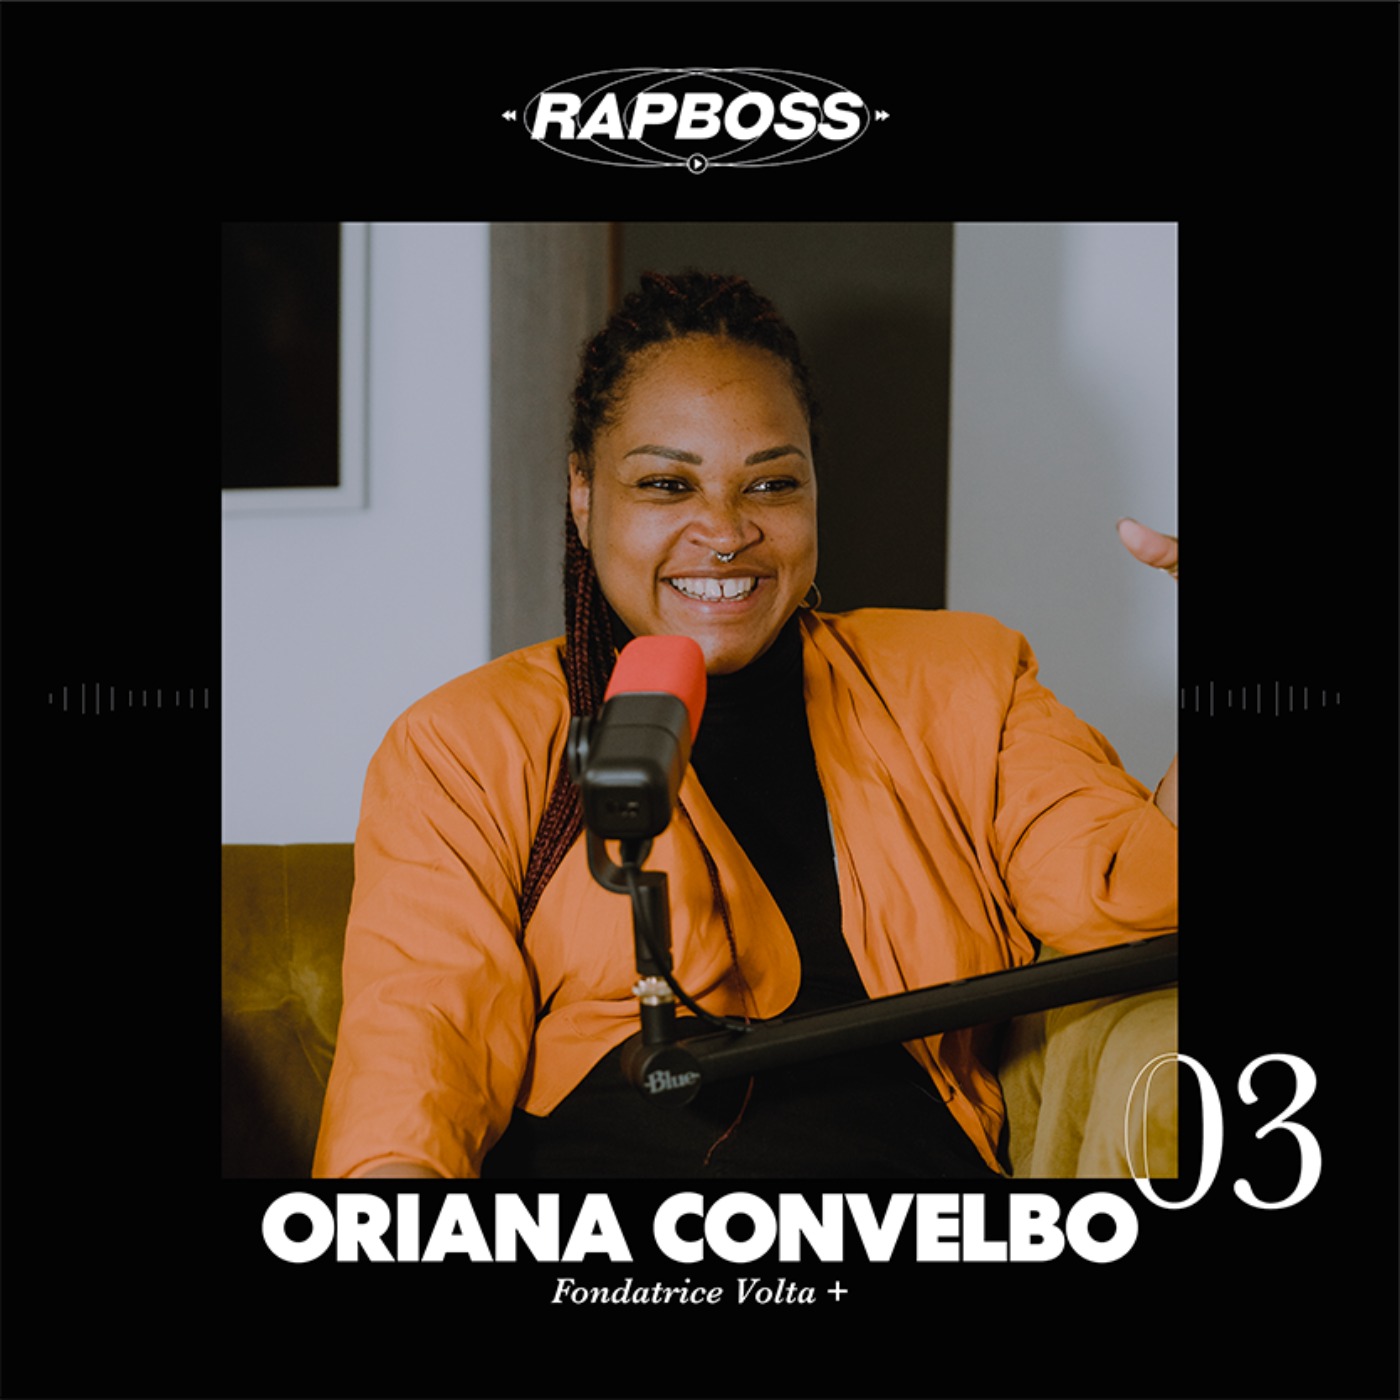 #03 Oriana Convelbo - Passer par Sony, Warner et Universal, puis tout quitter et lancer Volta + afin d’accompagner des artistes minorisés comme Freeze Corleone, Maureen ou Tif